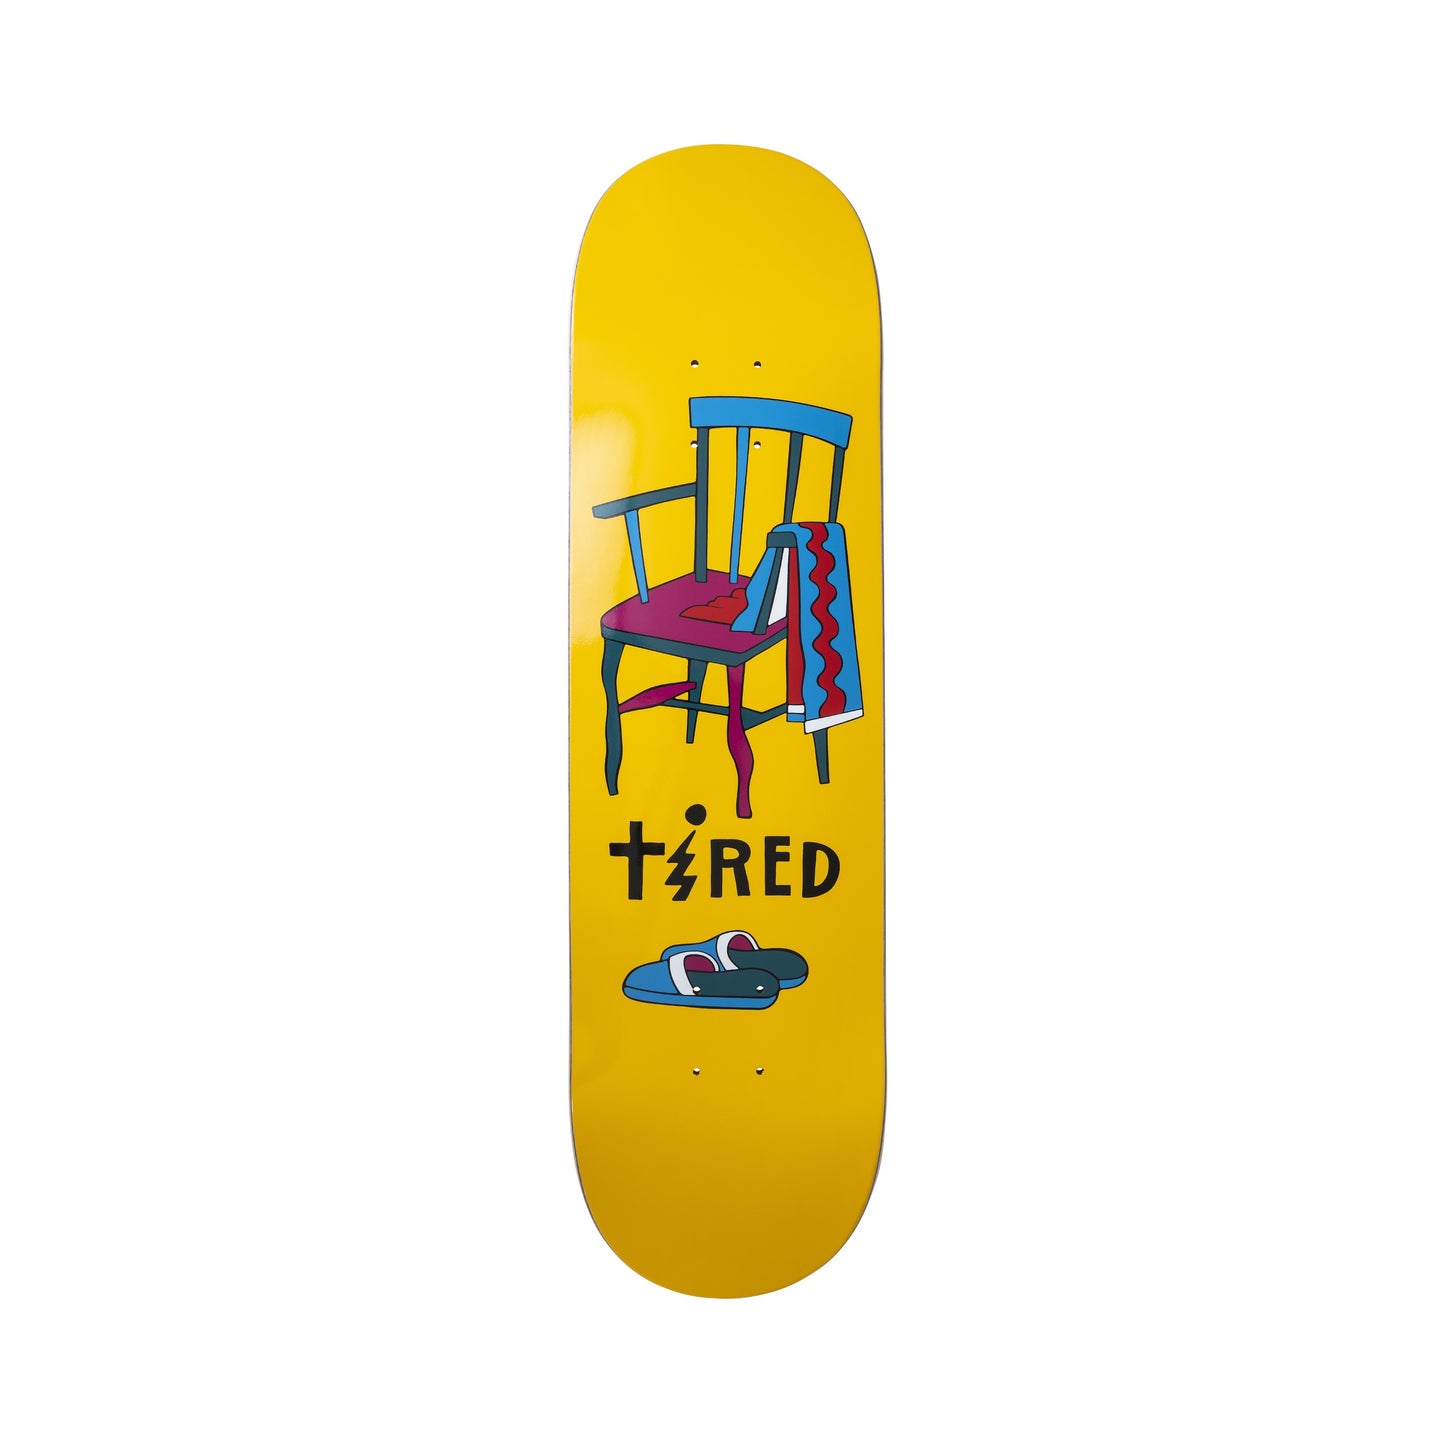 Tired Jolt Skateboard Deck 8.25